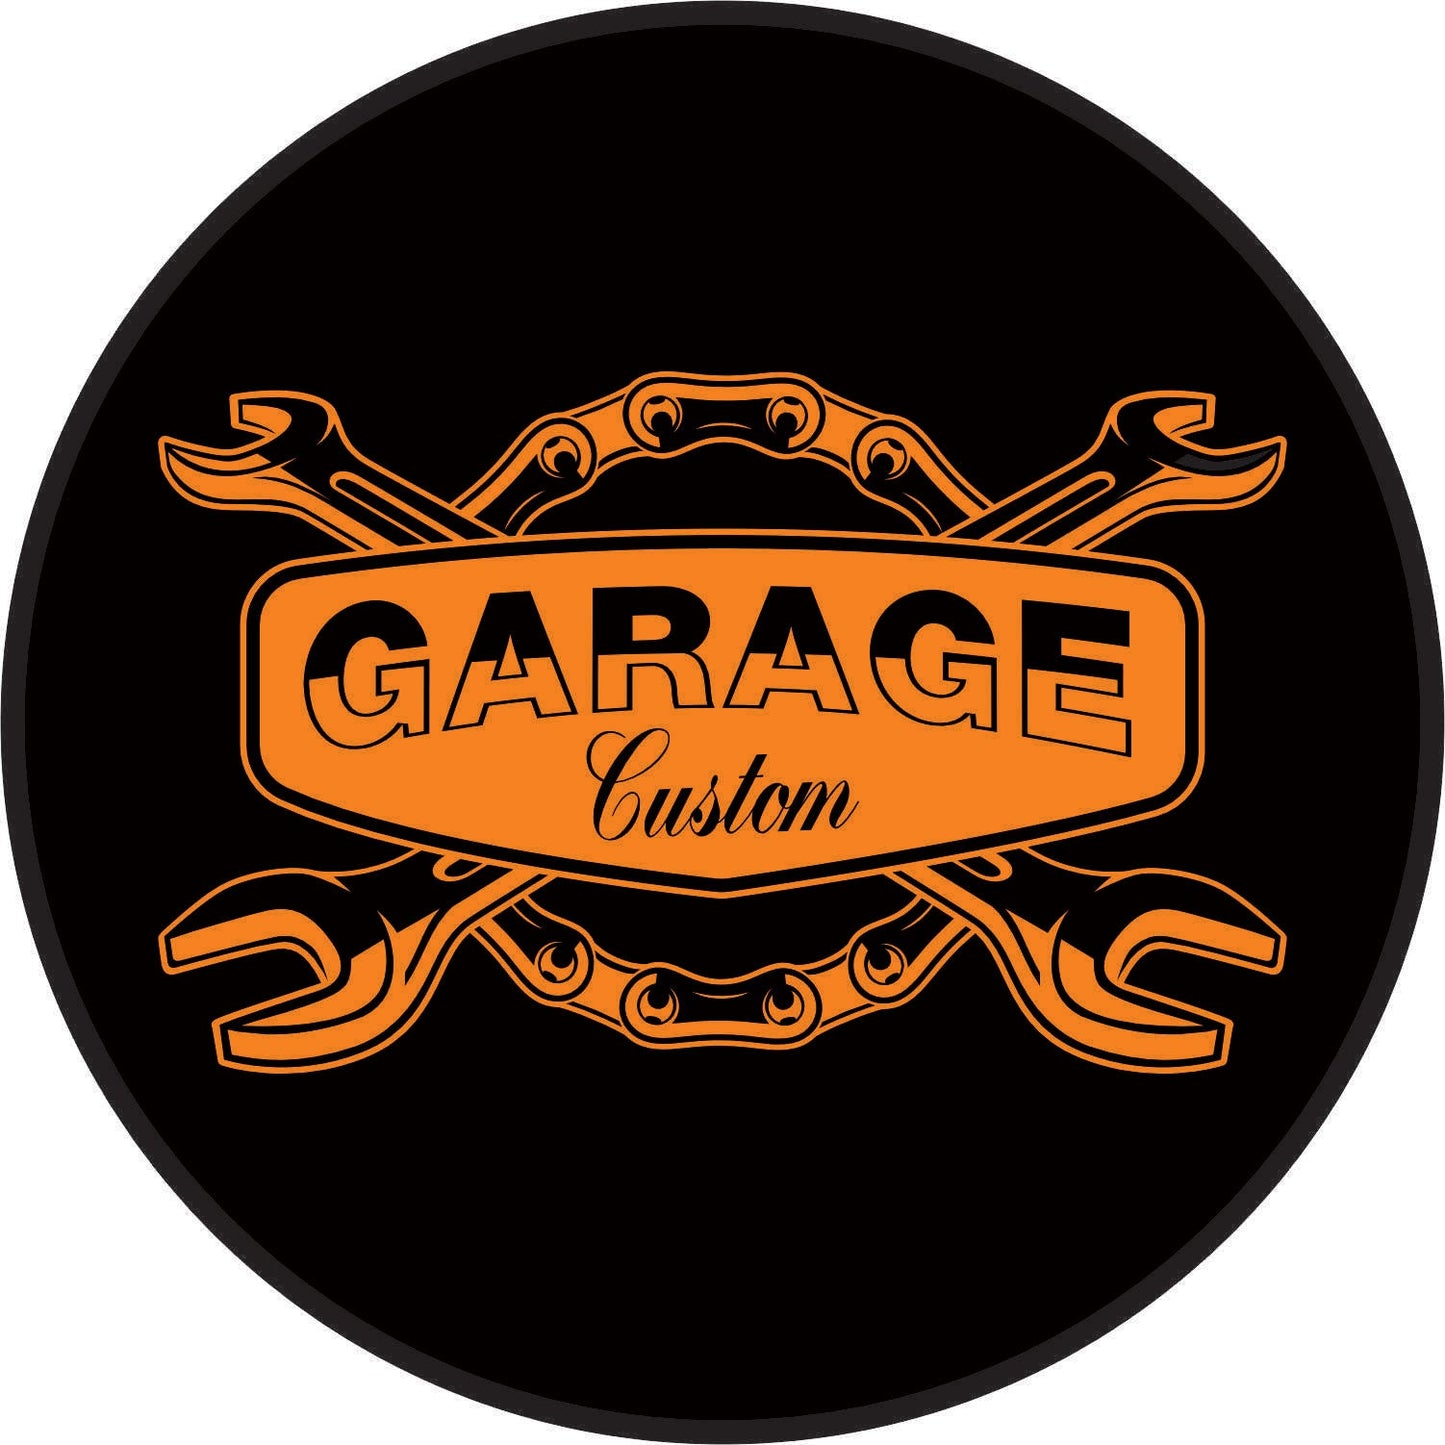 086-Single-sided illuminated sign - Garage